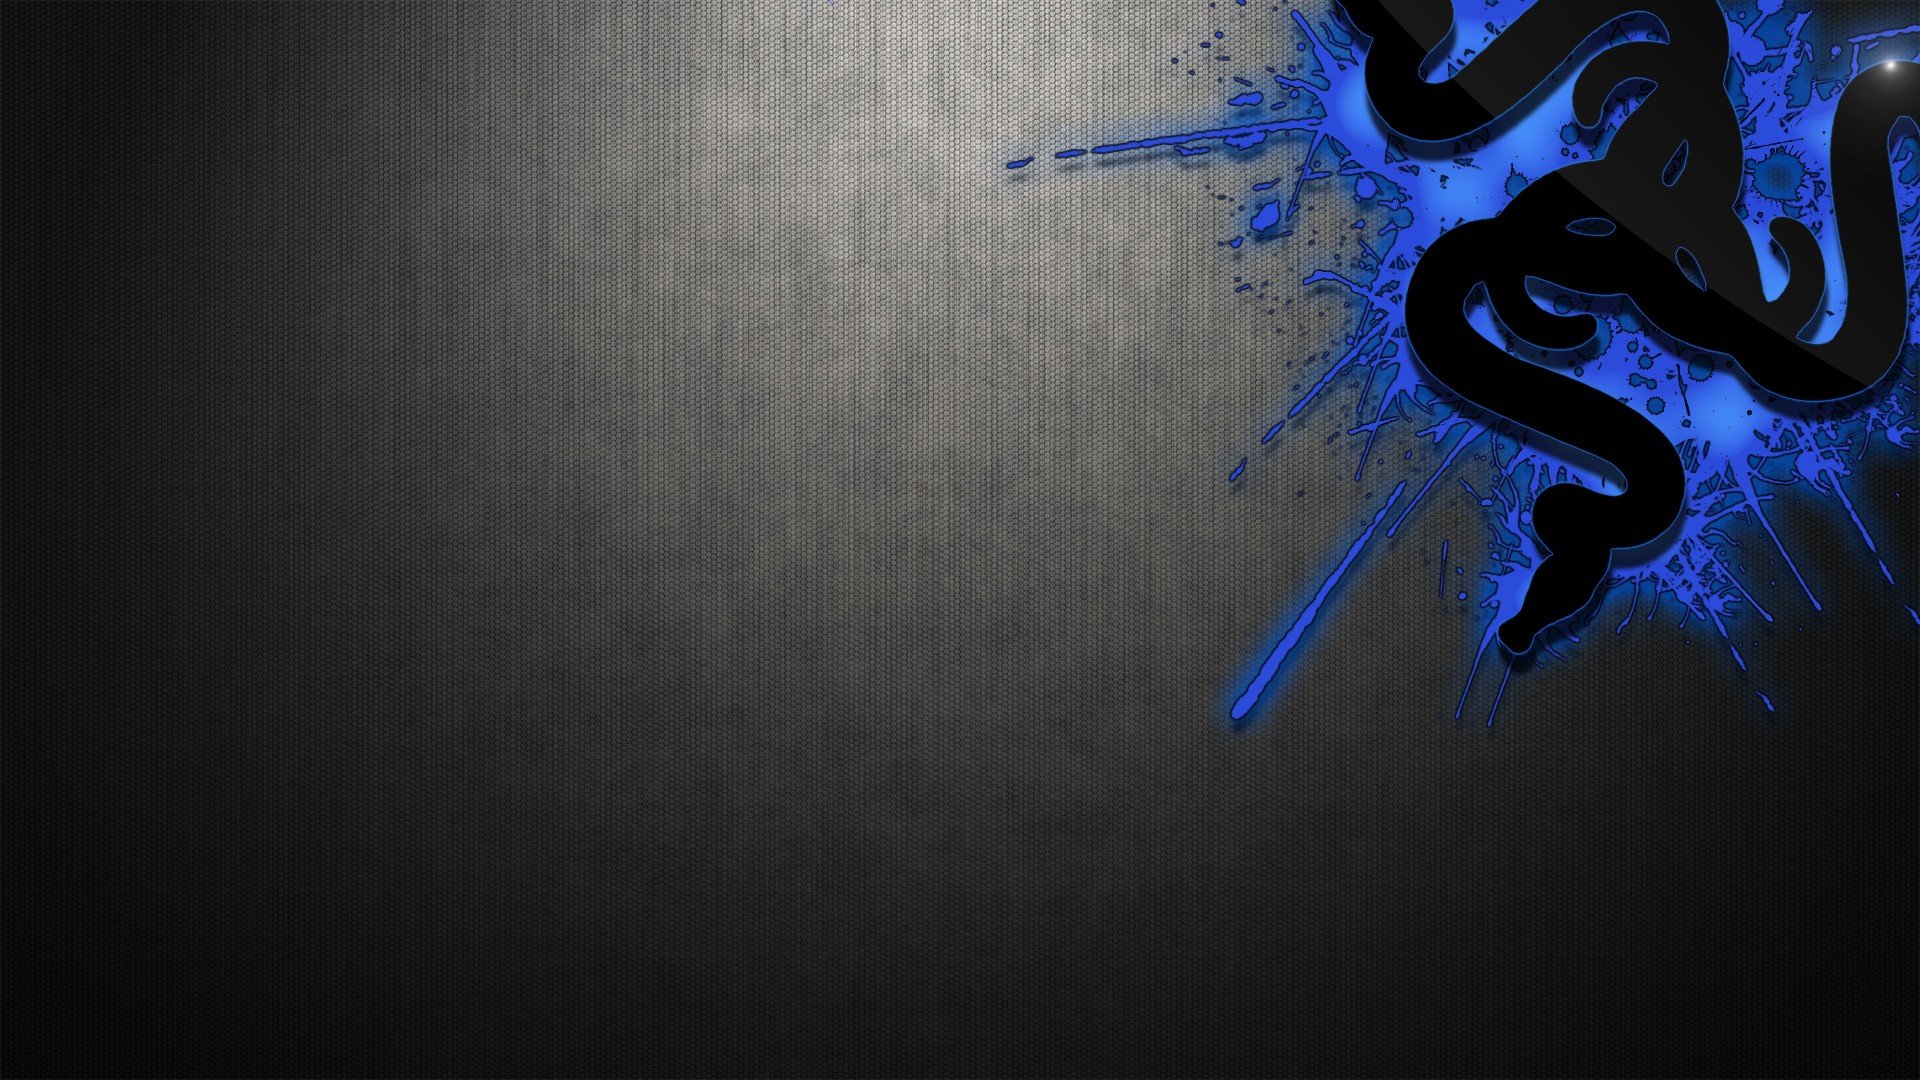 blaue gaming wallpaper,blau,schwarz,himmel,dunkelheit,grafikdesign